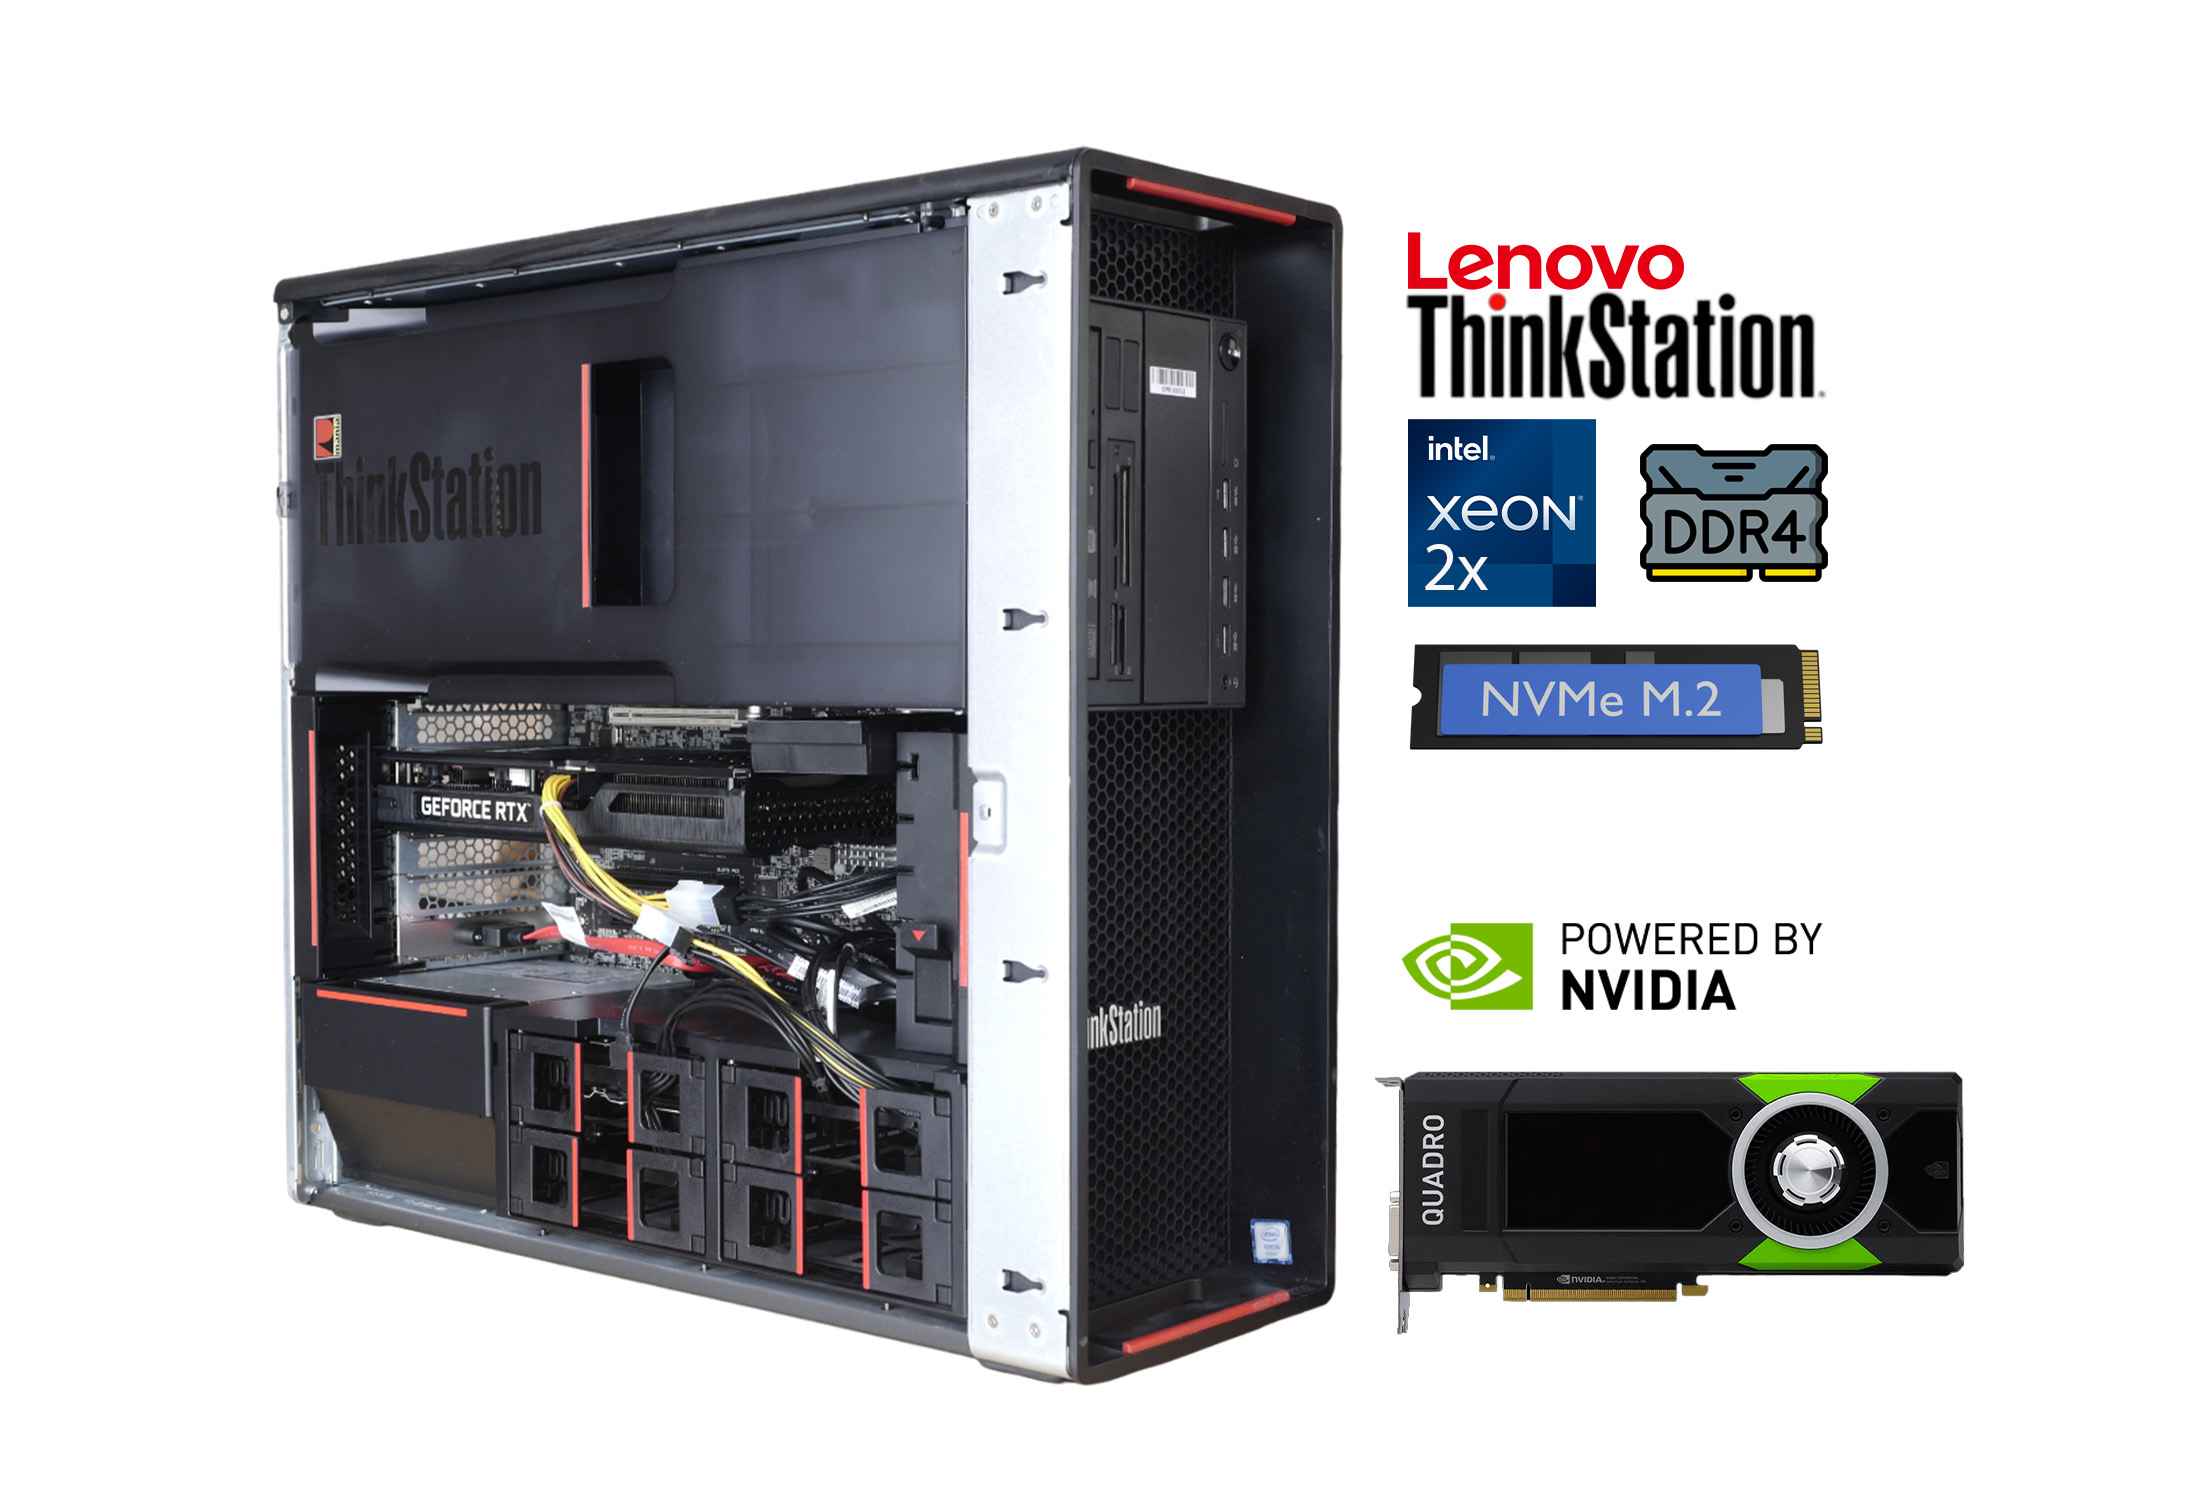 Lenovo Thinkstation P700 2x Xeon E5-2687W v3 DDR4 NVMe Quadro P2000-EcPBf.jpeg